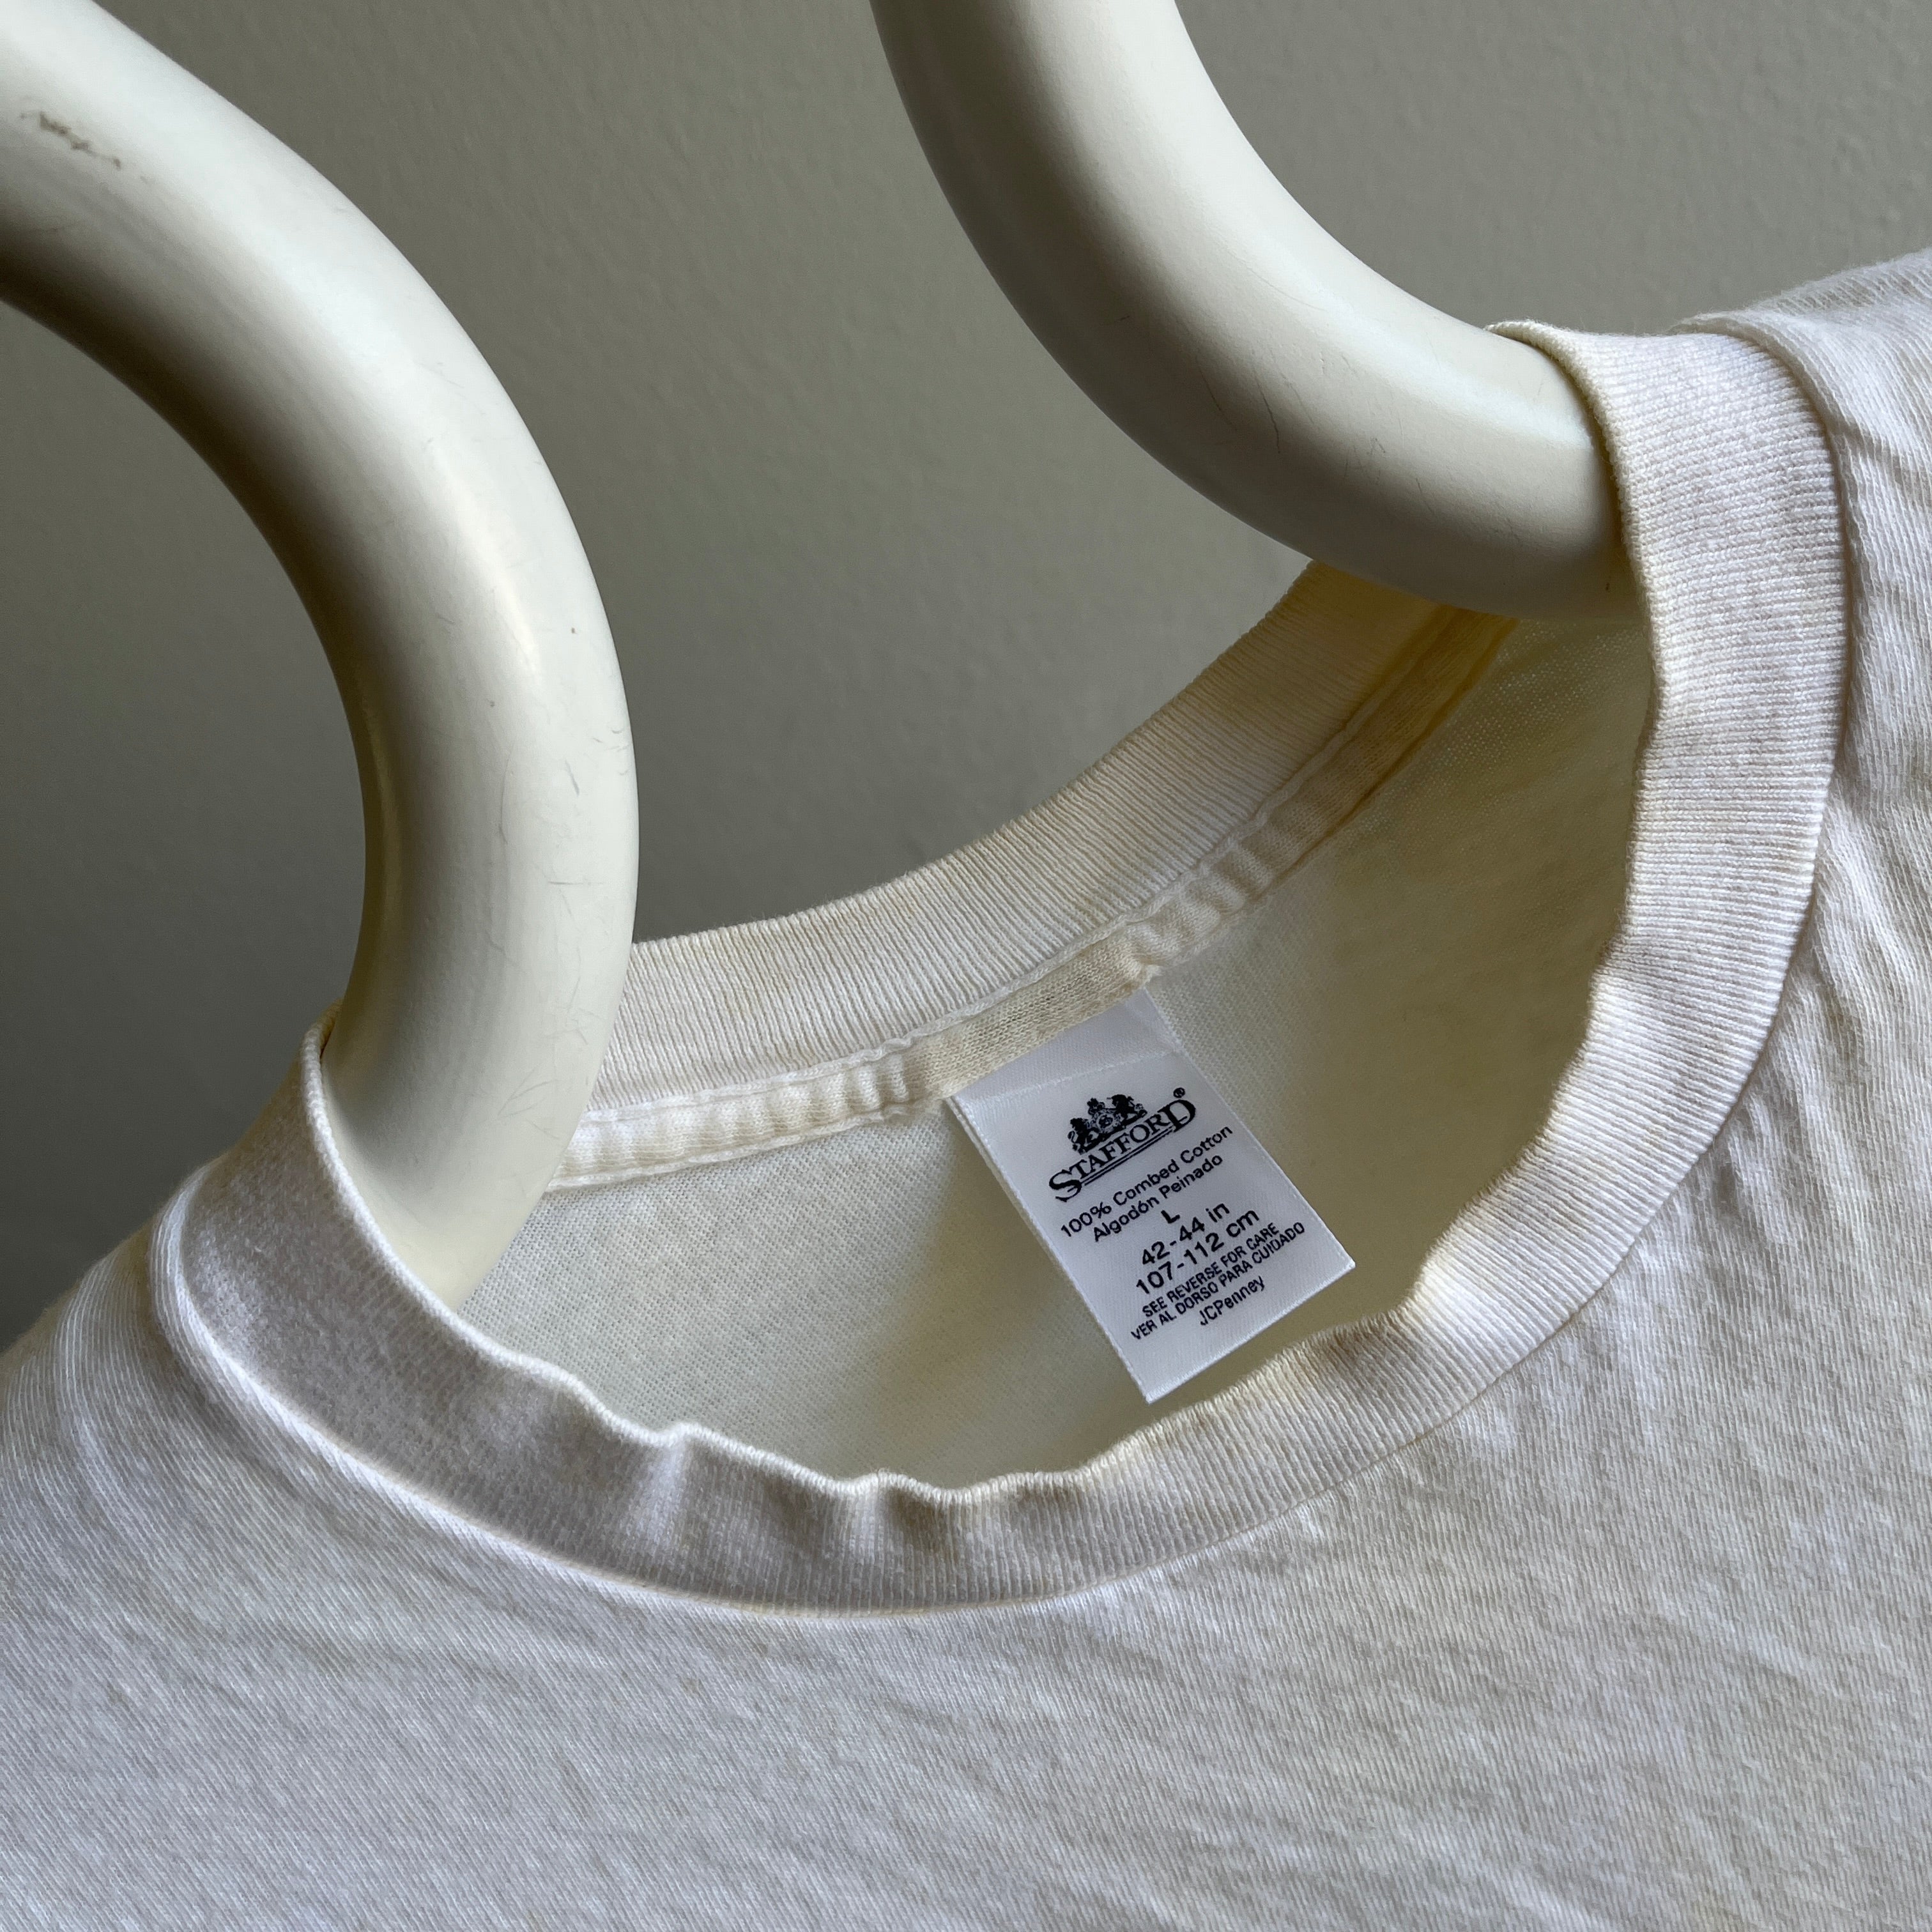 T-shirt blanc/écru GG 1990s JC Penny Blank